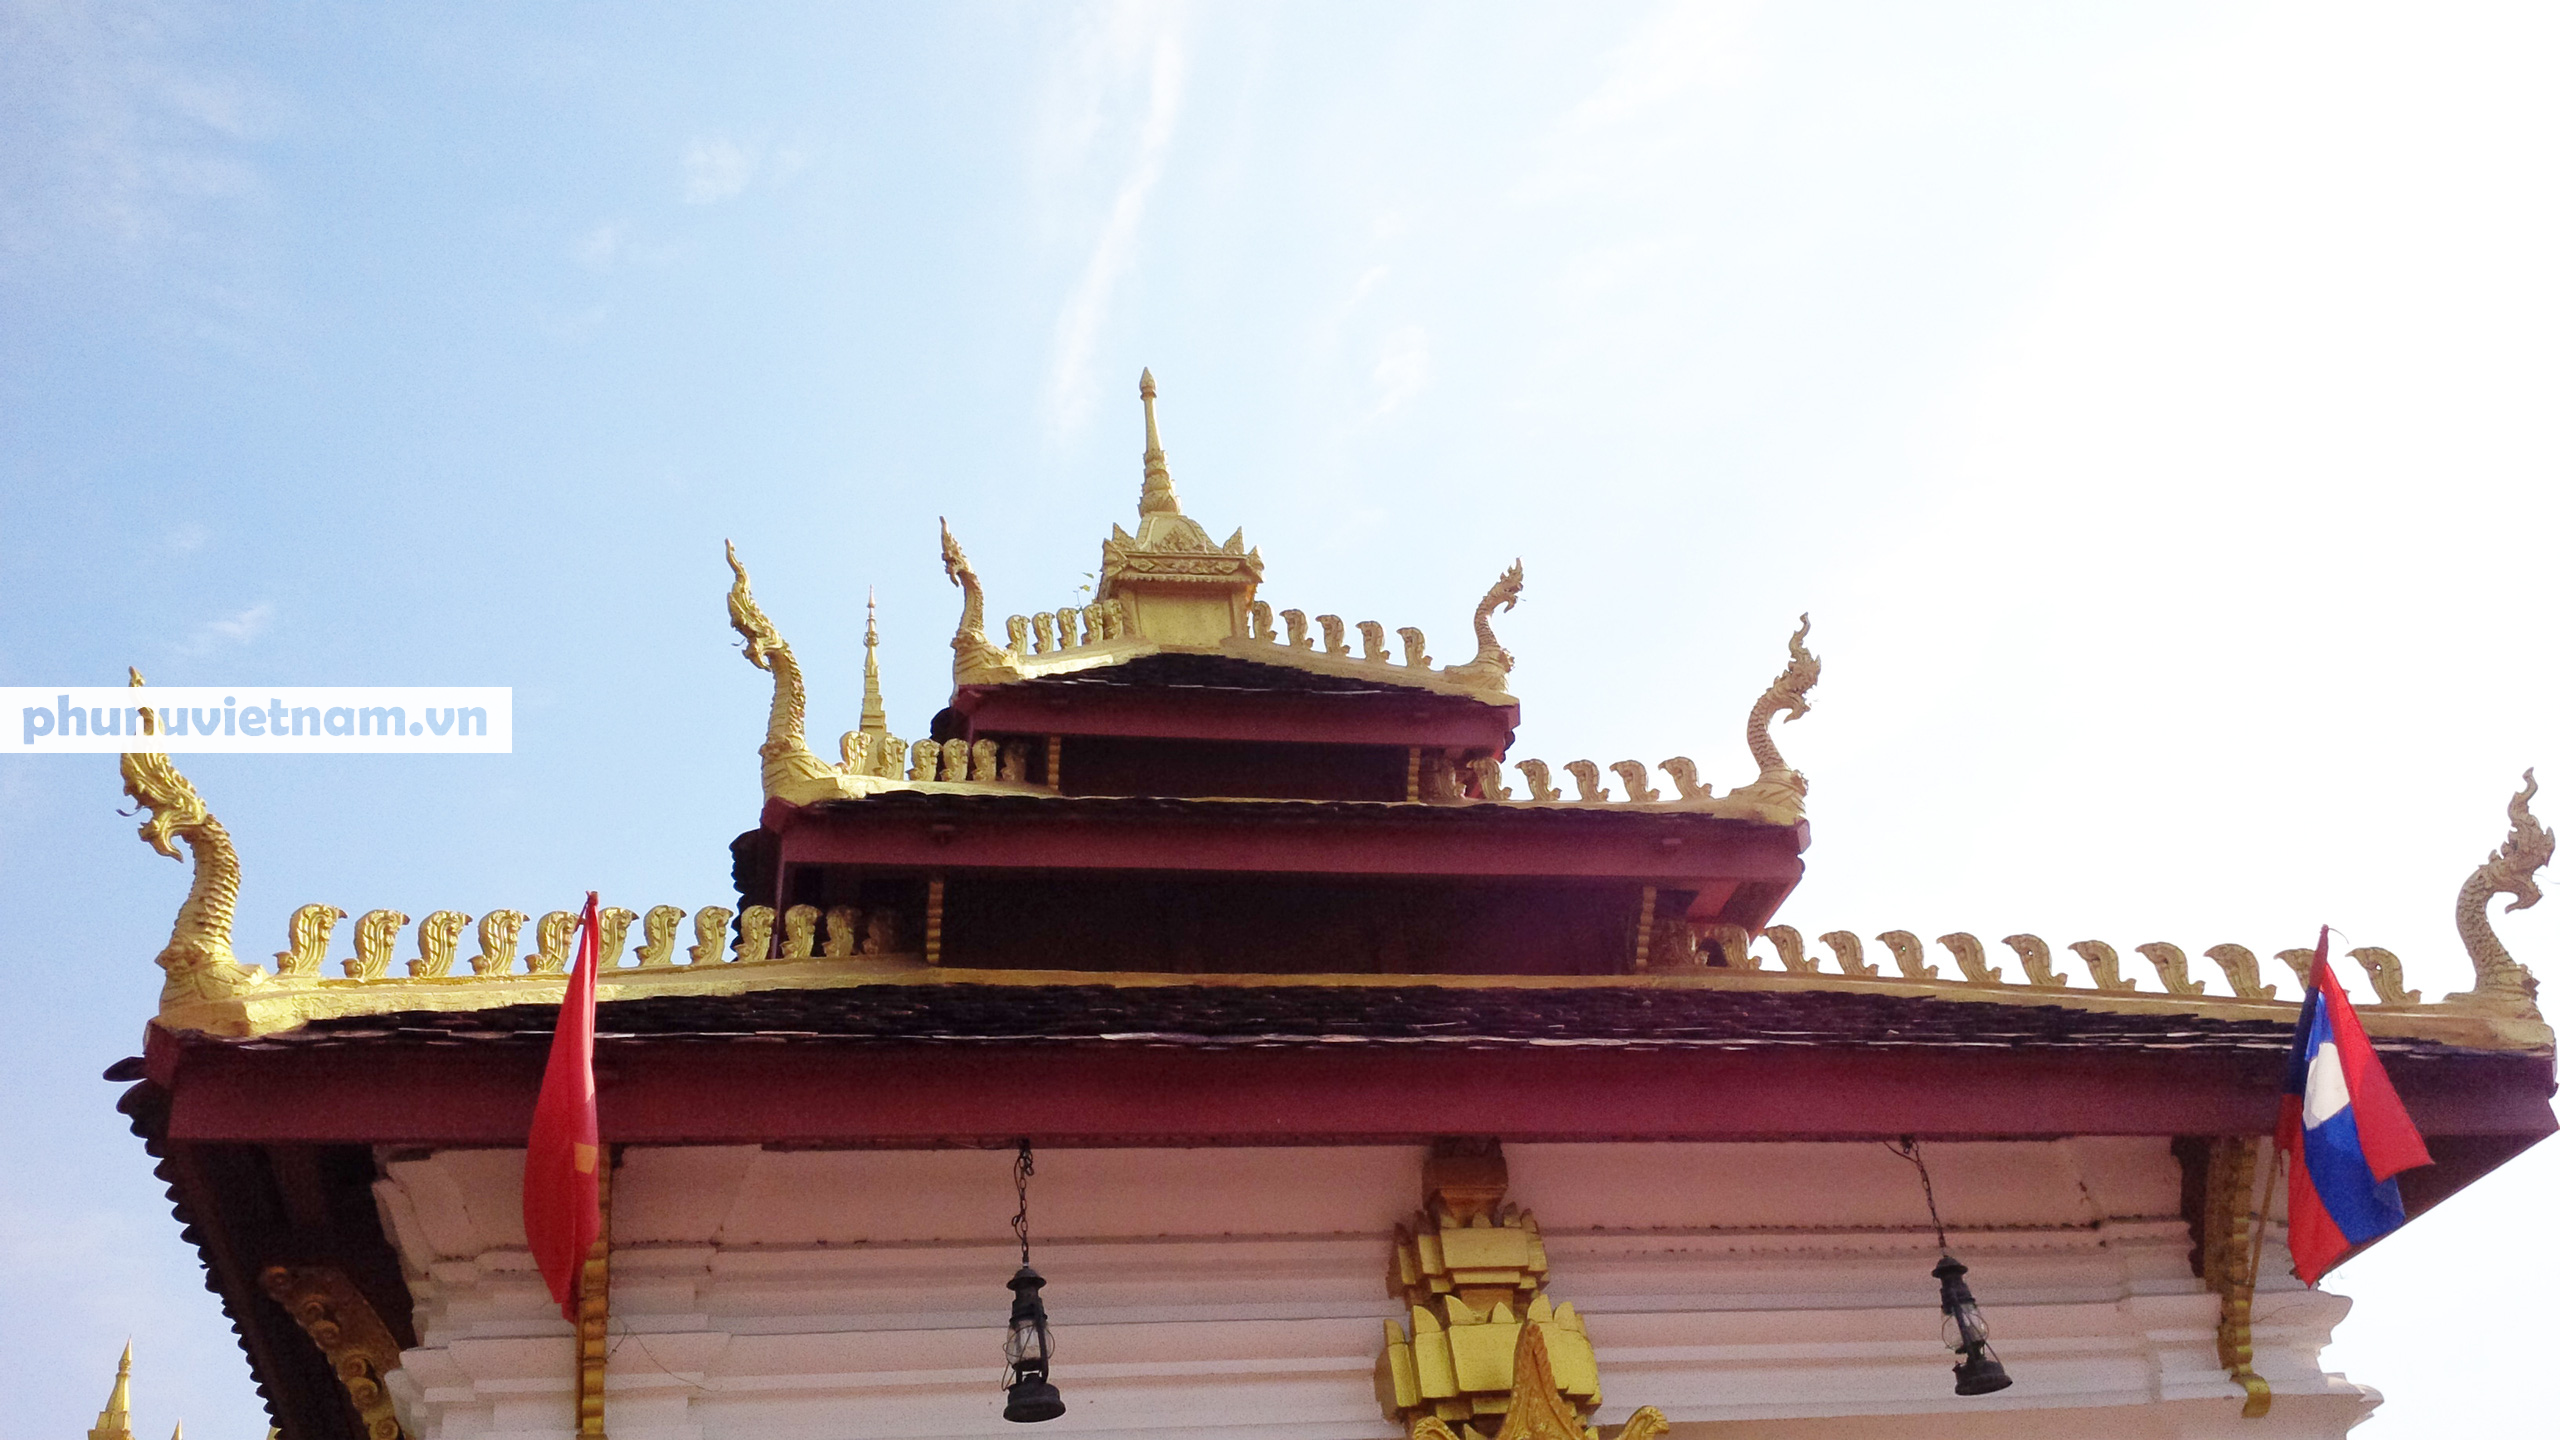 Chiêm ngưỡng ngôi tháp vàng lớn nhất của Lào, gần 500 tuổi tráng lệ giữa đất trời - Ảnh 21.